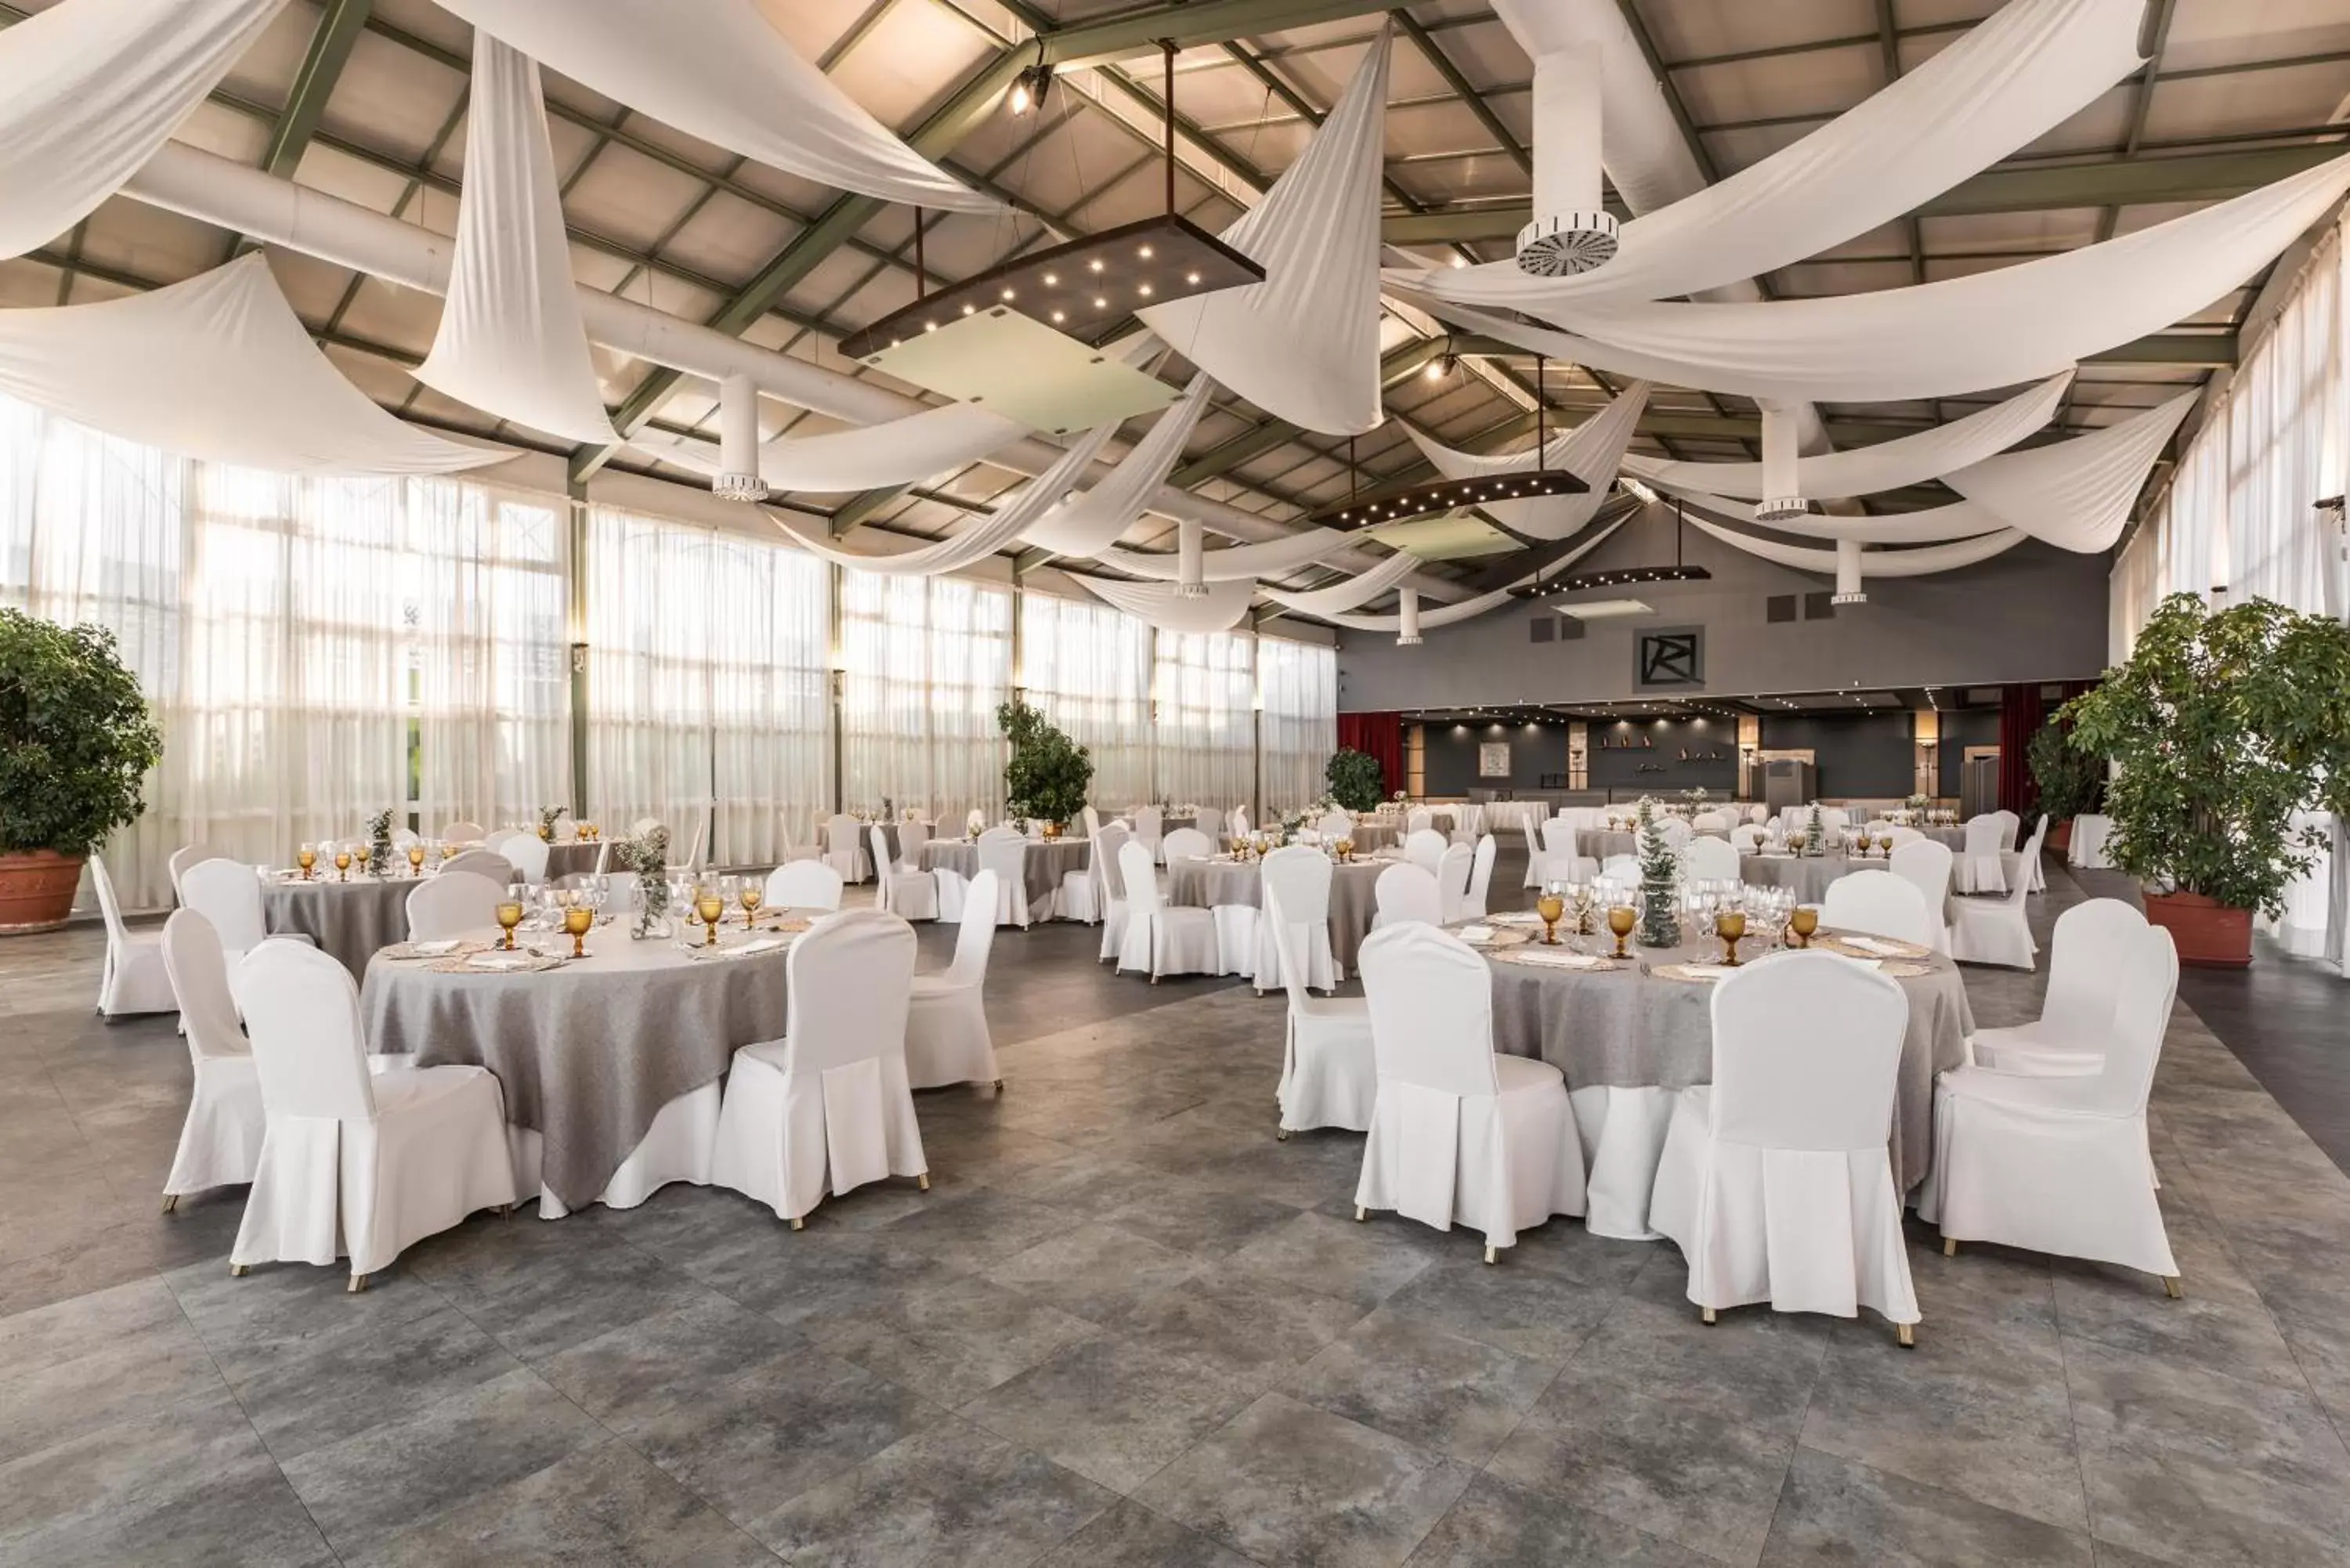 Banquet/Function facilities, Banquet Facilities in Hotel Rio Badajoz